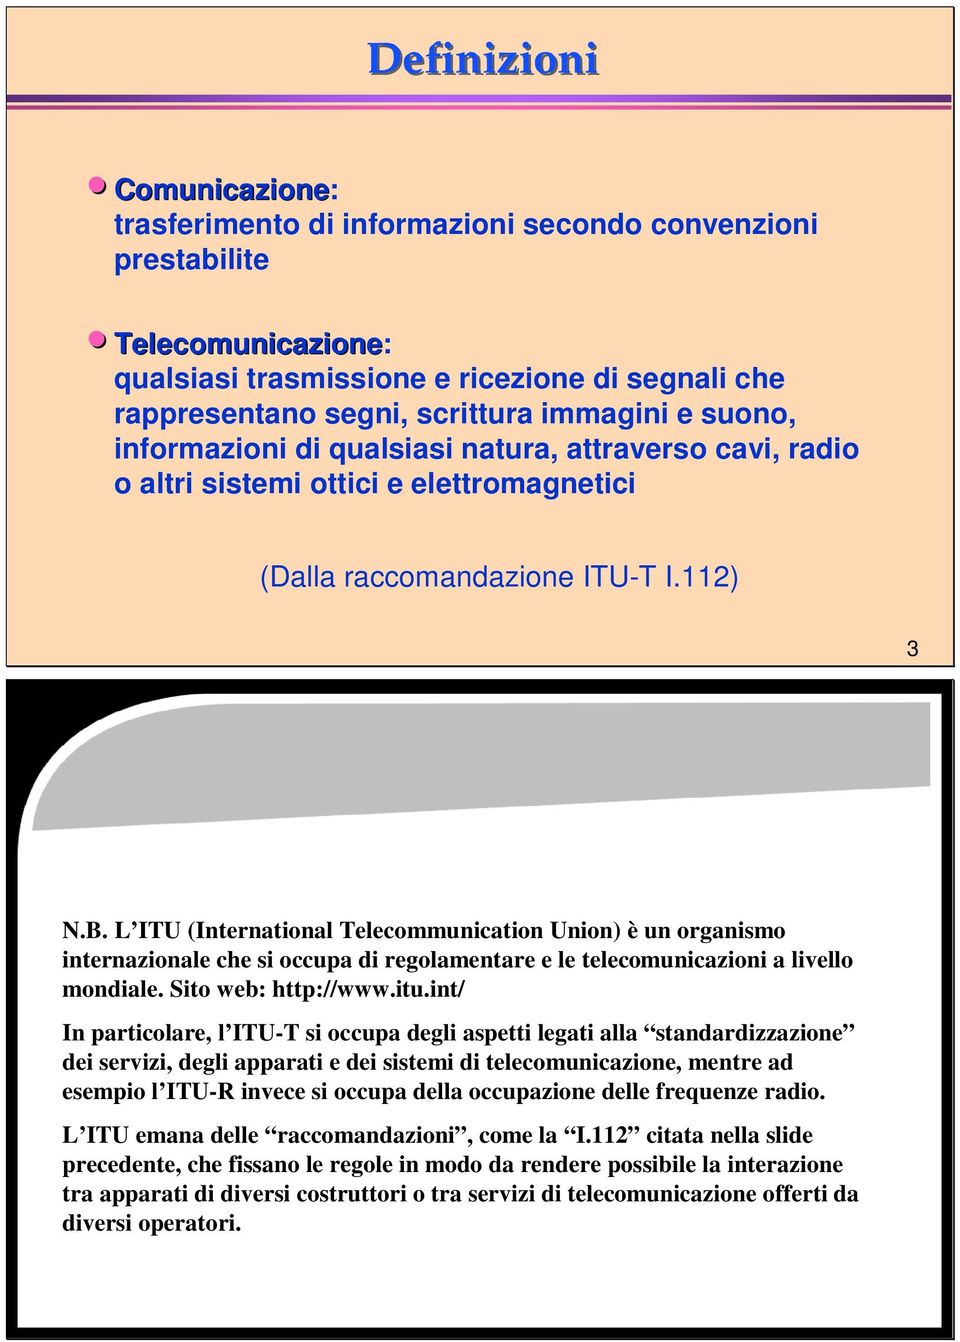 L ITU (International Telecommunication Union) è un organismo internazionale che si occupa di regolamentare e le telecomunicazioni a livello mondiale. Sito web: http://www.itu.